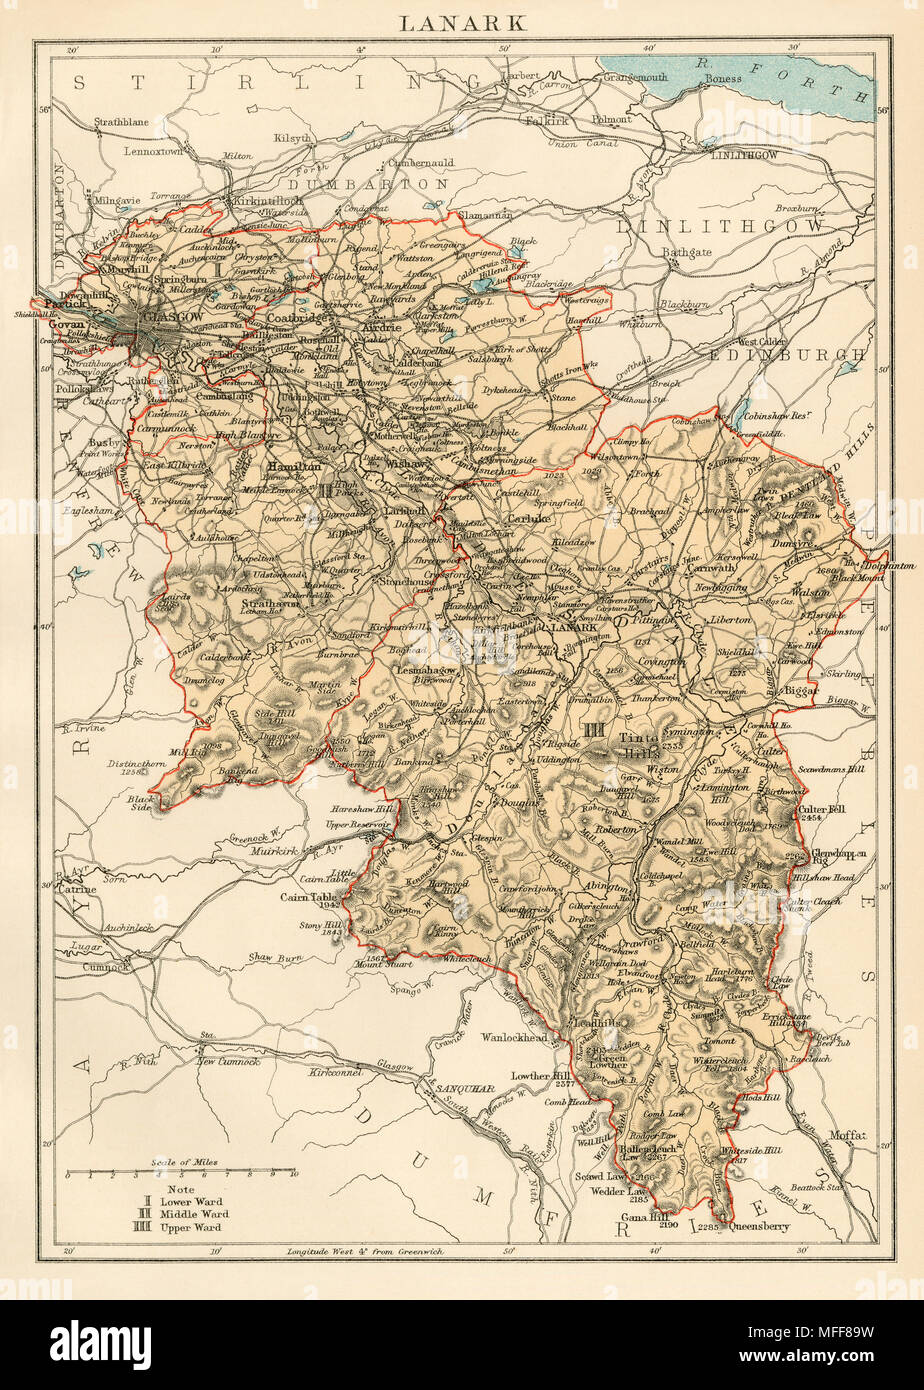 Karte der Grafschaft Lanark, Schottland, 1870. Gedruckte farbige Lithographie Stockfoto